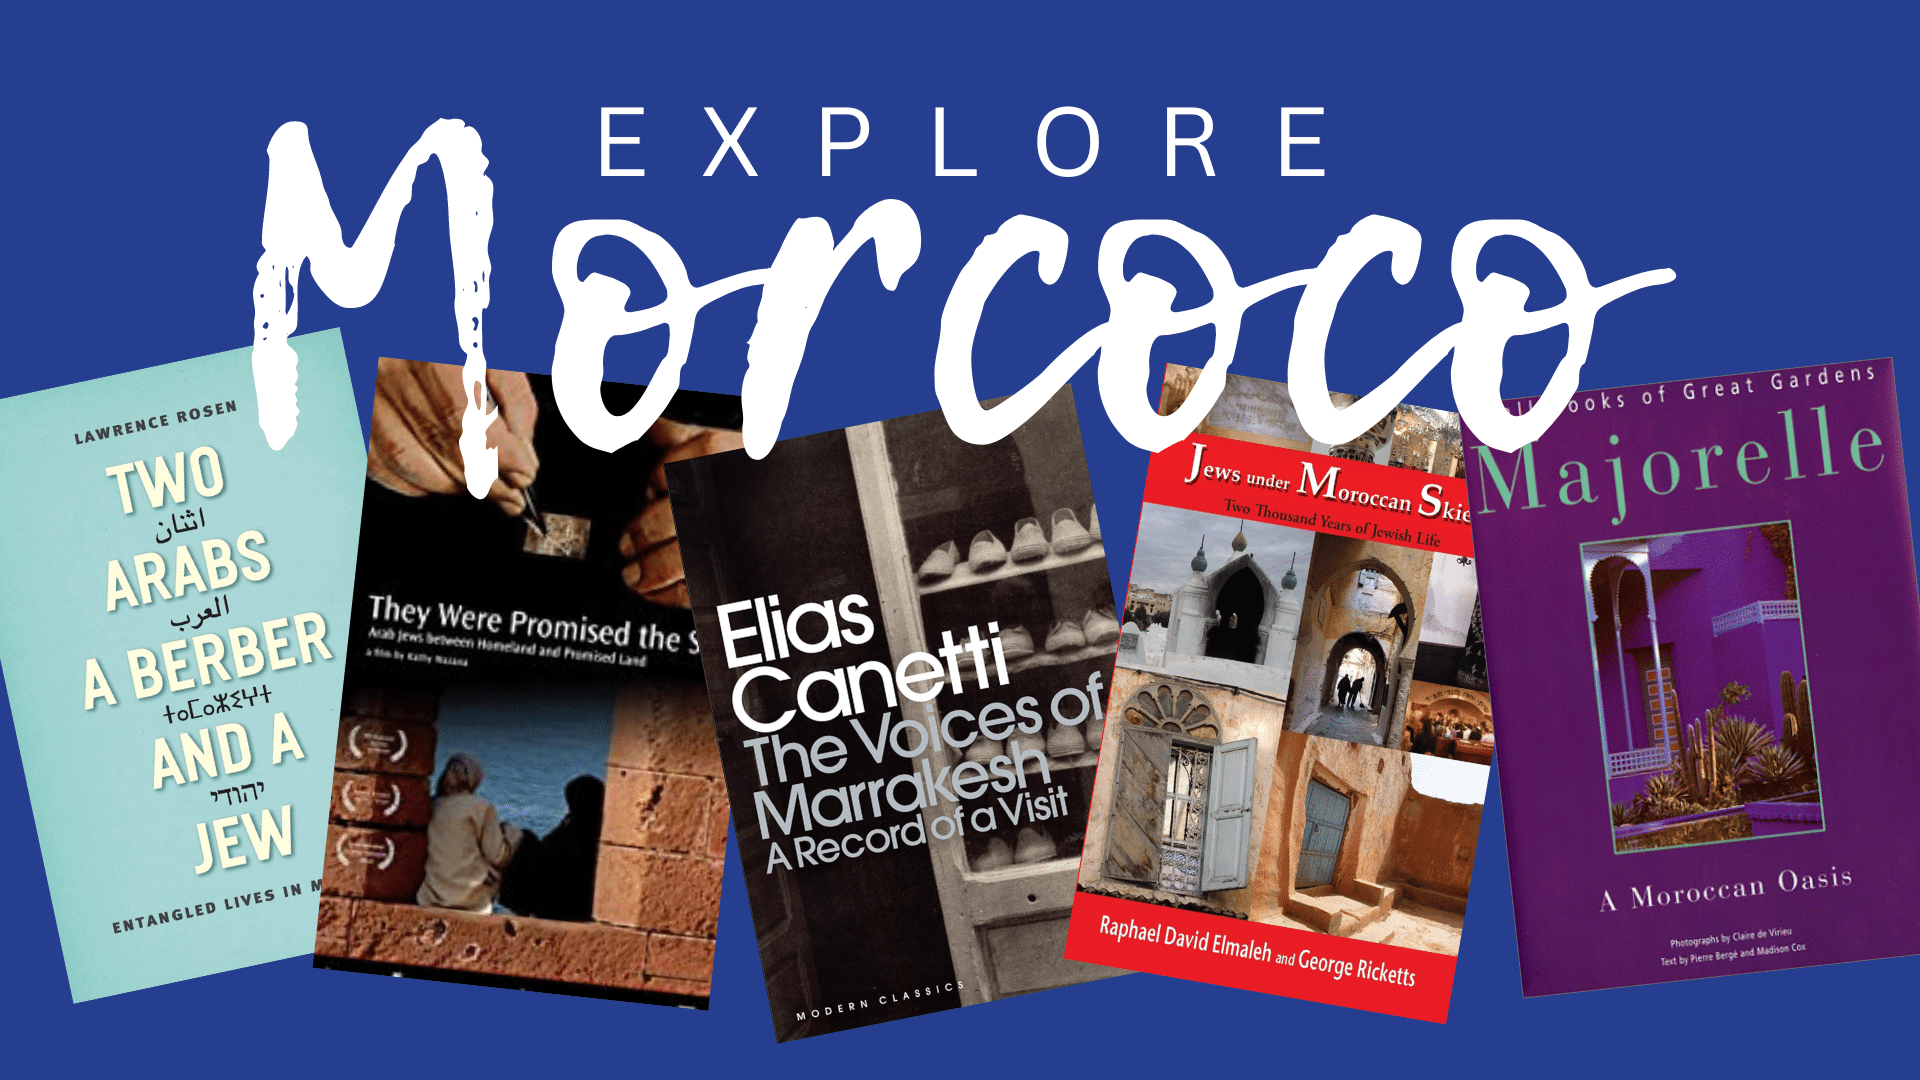 Explore Morocco